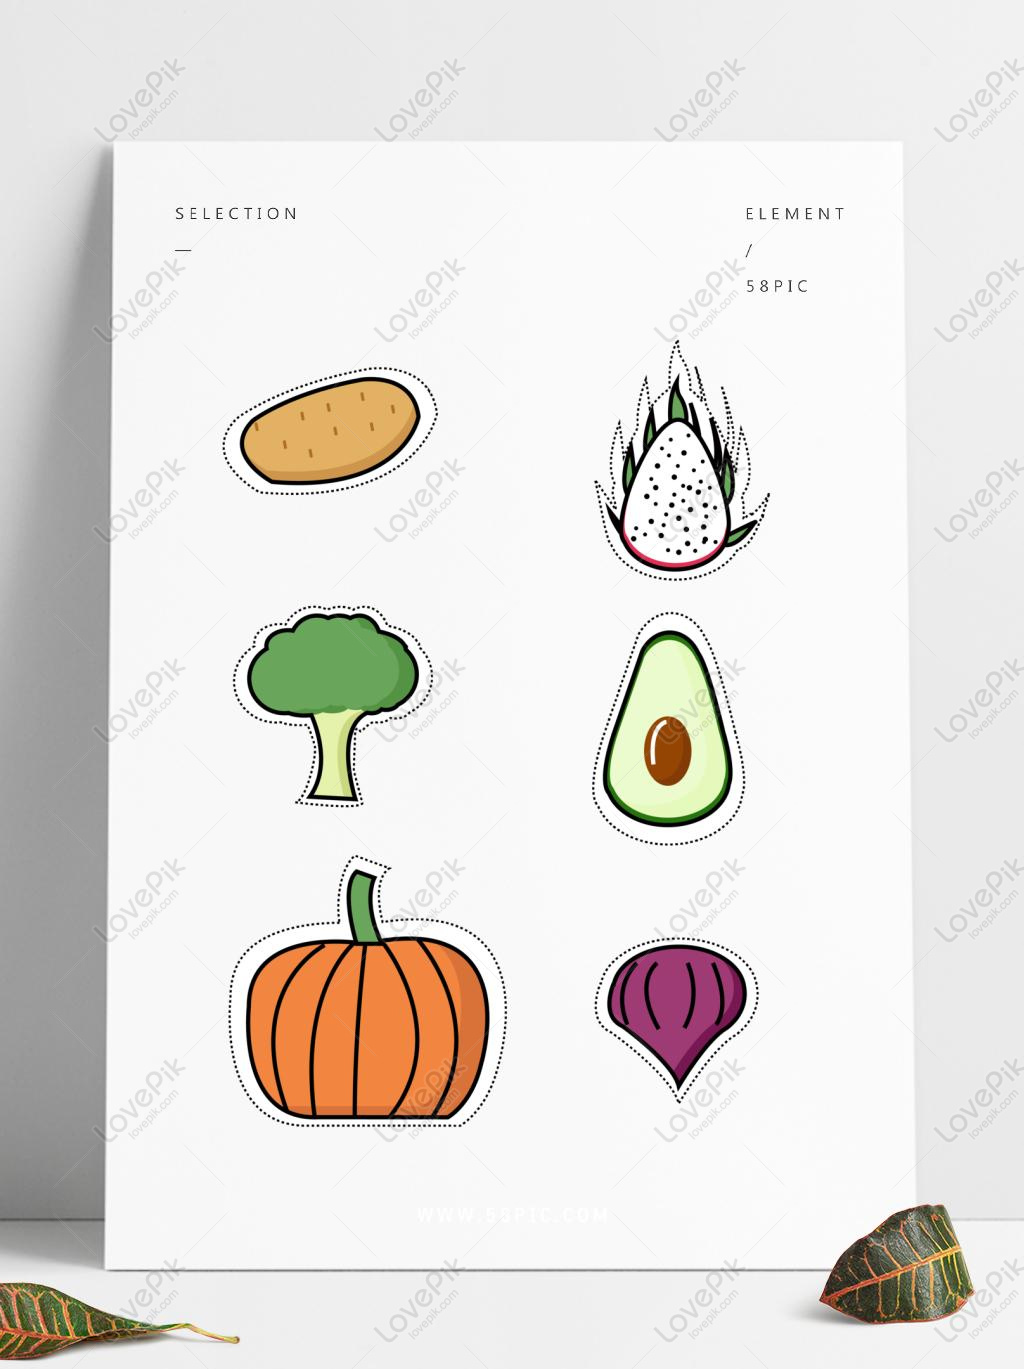 Bạn muốn trang trí lớp học hay phòng làm việc của mình với những hình ảnh trái cây và rau củ đáng yêu? Thì hãy đến với chúng tôi và tận hưởng những bức sticker hoạt hình tuyệt đẹp được thiết kế đặc biệt và mang lại vẻ đẹp riêng cho không gian của bạn.